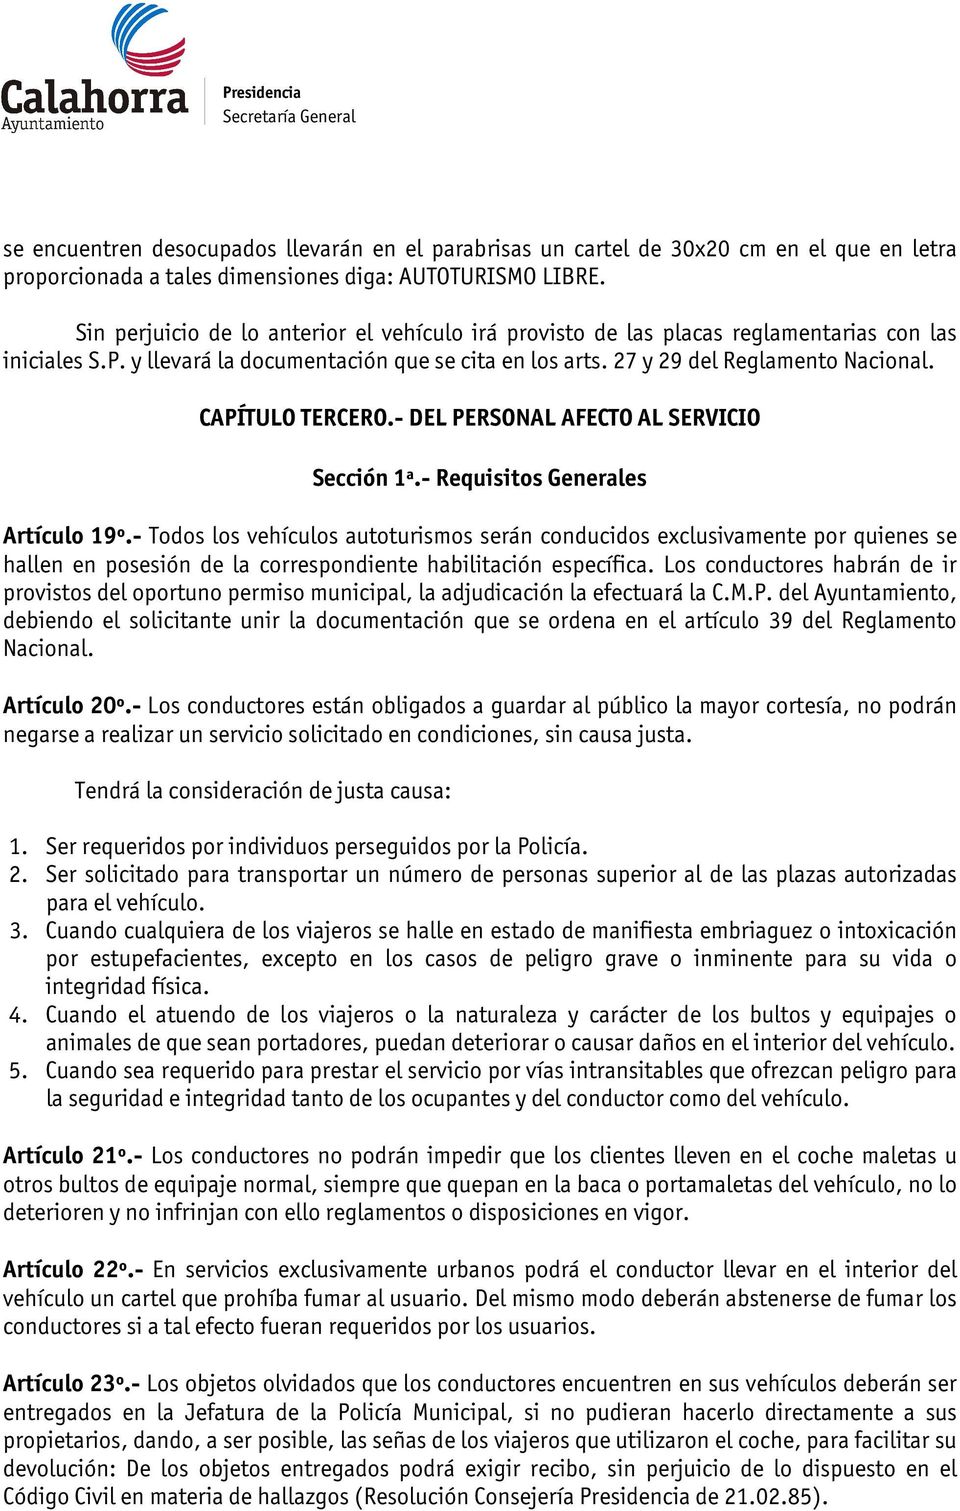 CAPÍTULO TERCERO.- DEL PERSONAL AFECTO AL SERVICIO Sección 1ª.- Requisitos Generales Artículo 19º.